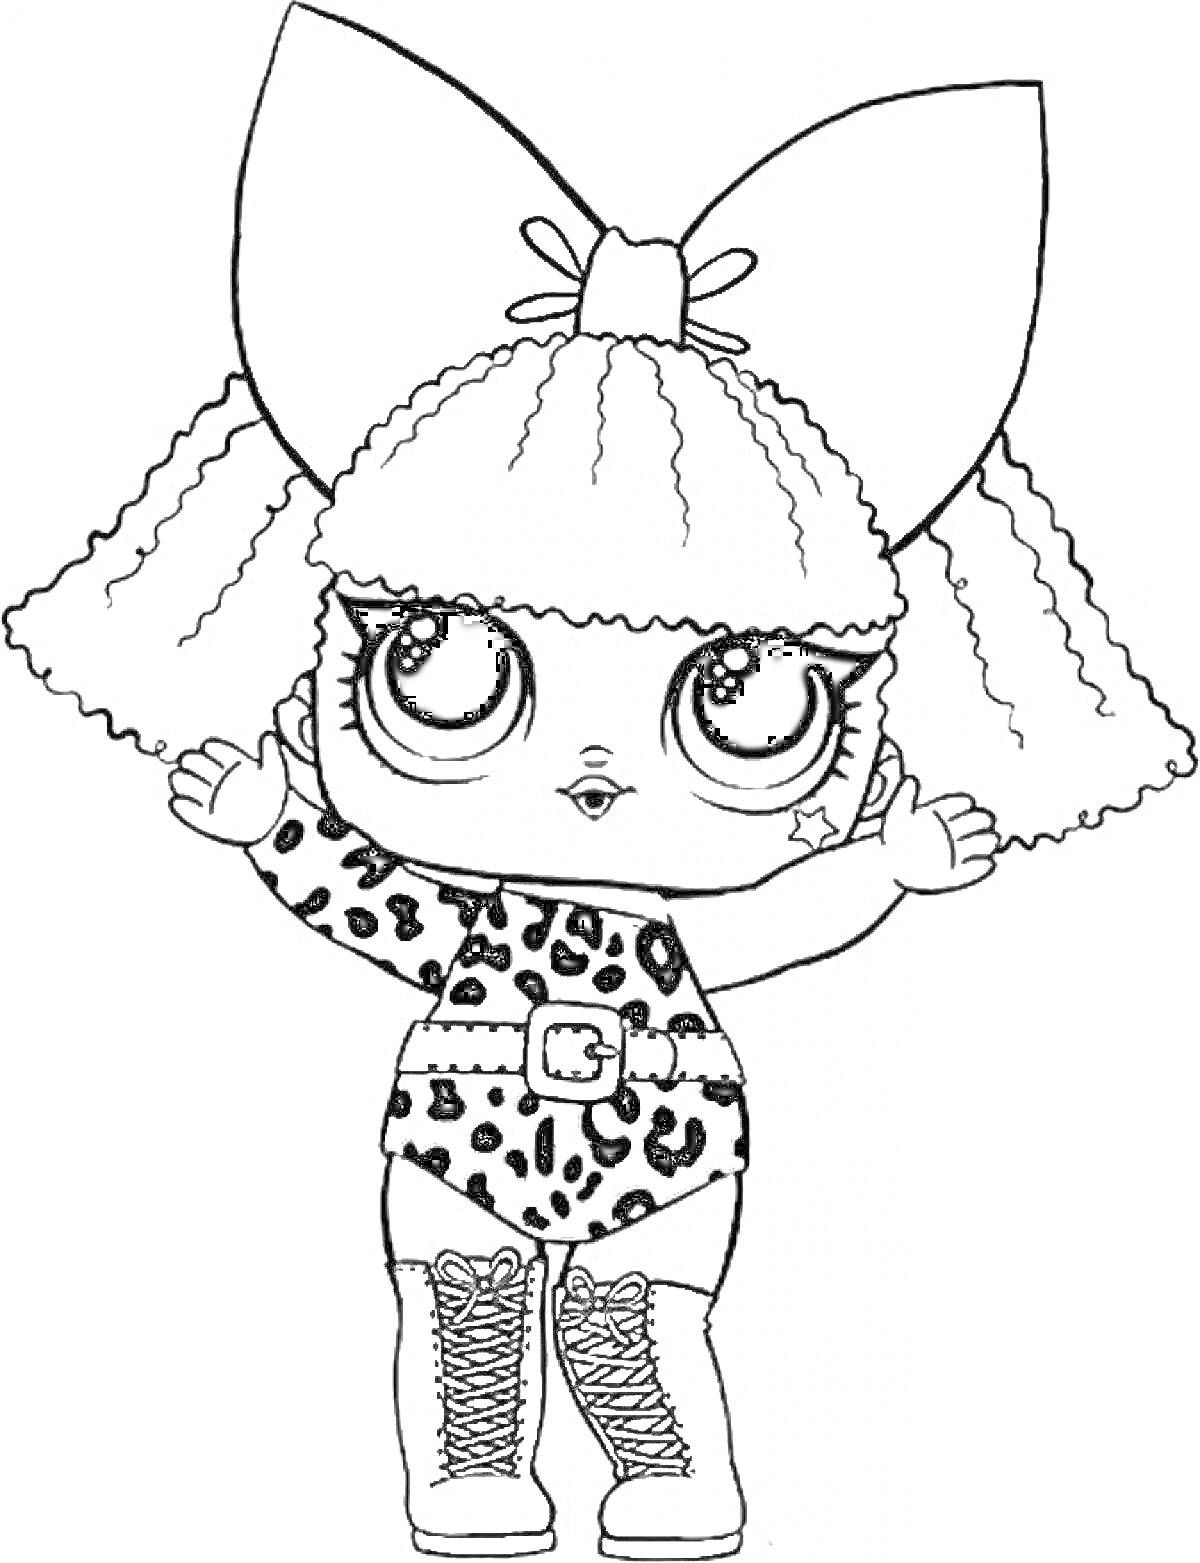 РаскраскаКукла Лол в леопардовом костюме с большими глазами, косичками, бантом на голове и ботинками